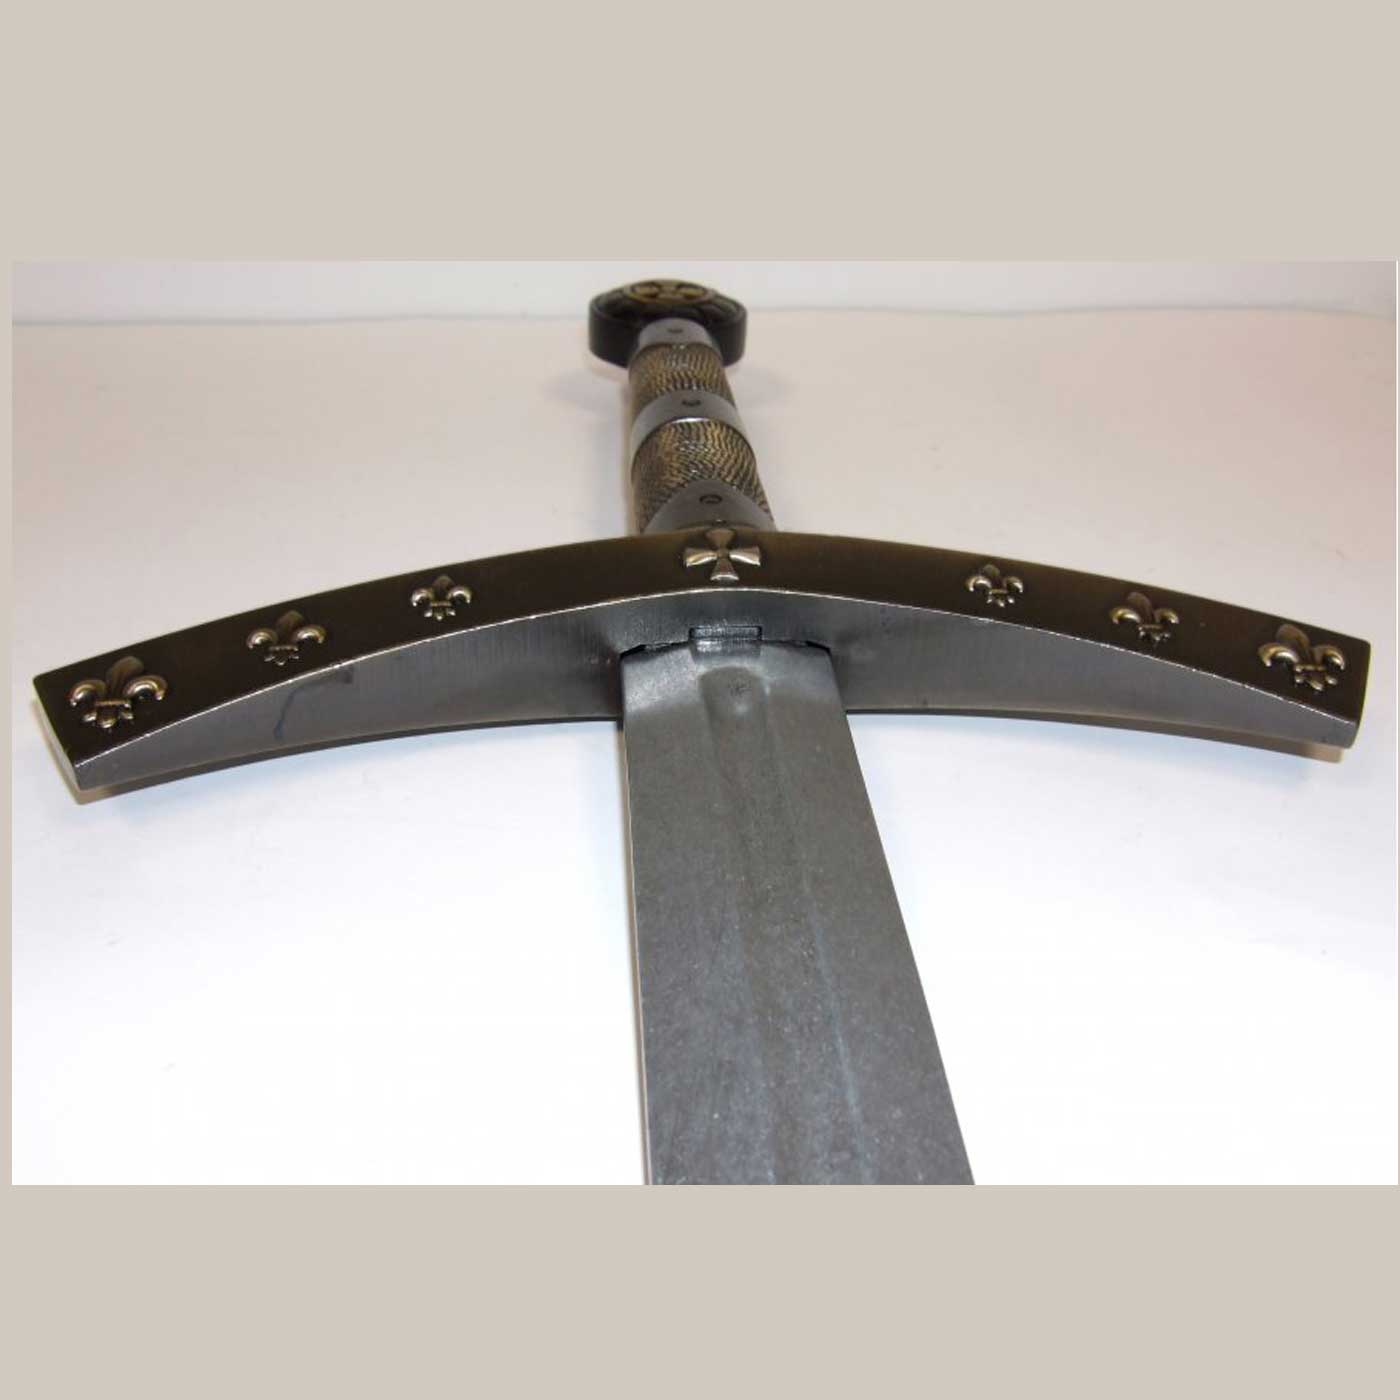 Espada-medieval-siglo-XIV.-4188L.-DENIX-(6)